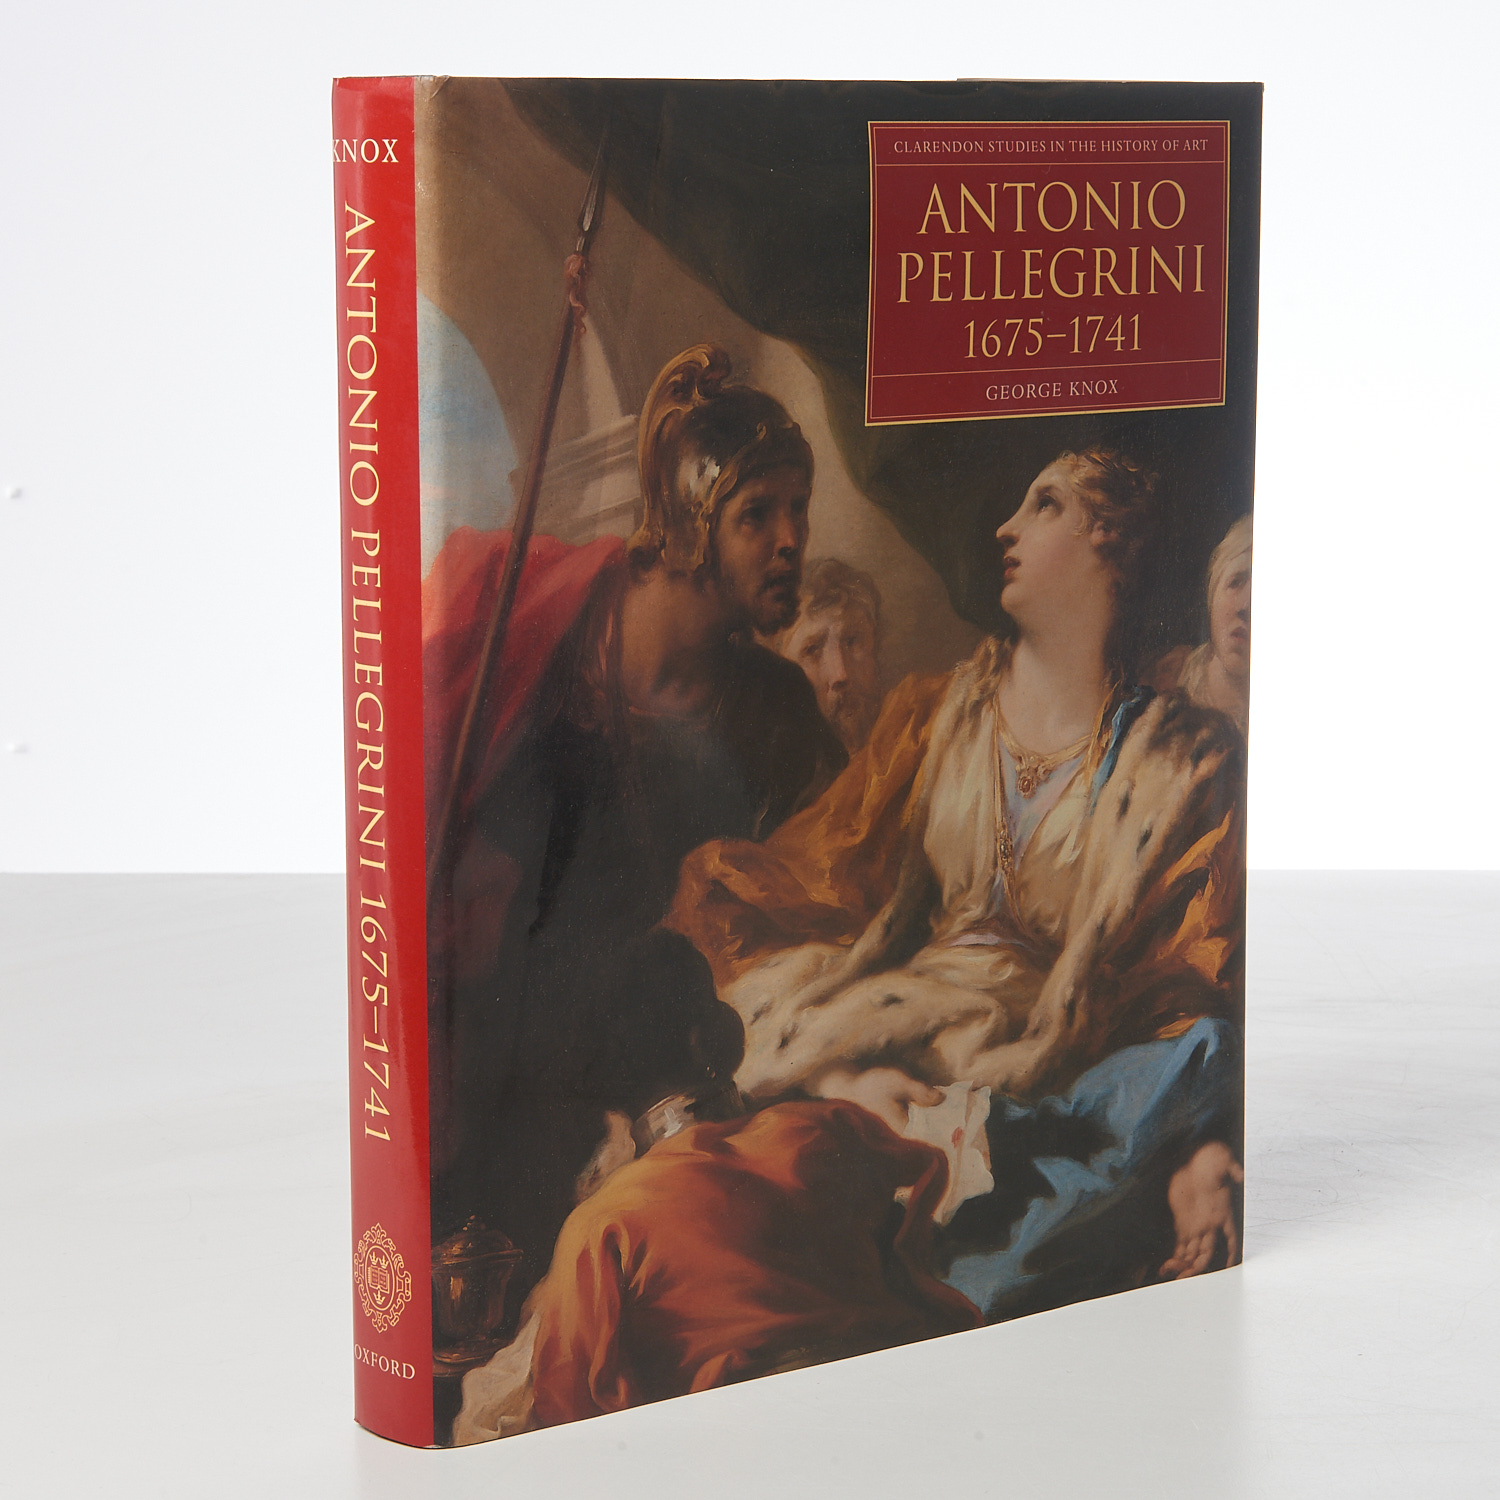 BOOKS: ANTONIO PELLEGRINI 1675-1741,